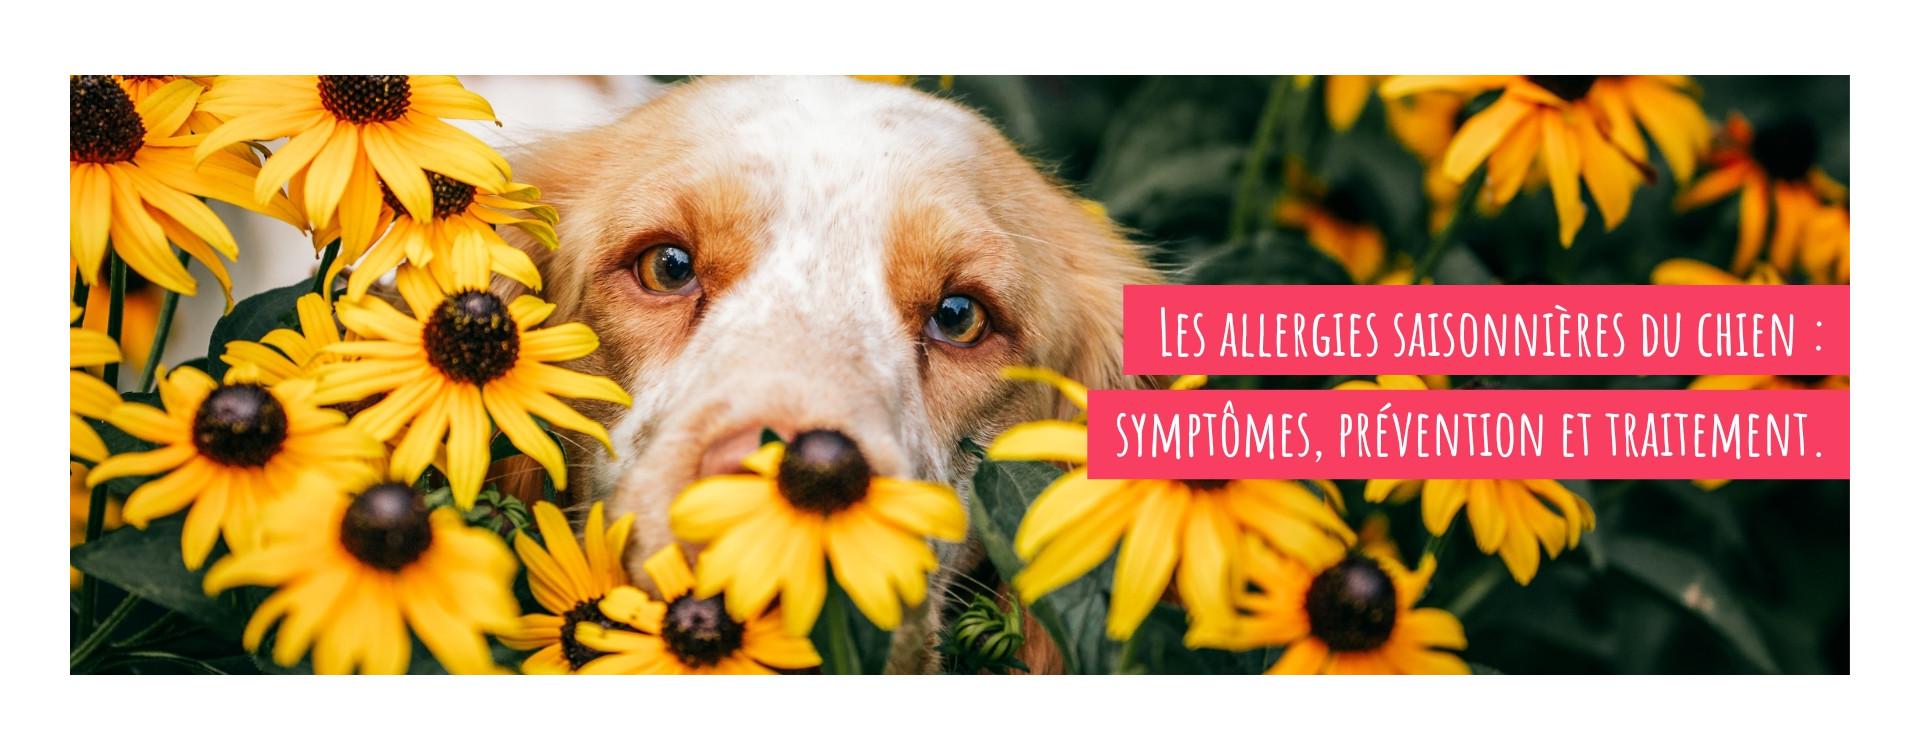 Les allergies saisonnières du chien : symptômes, prévention et traitement.